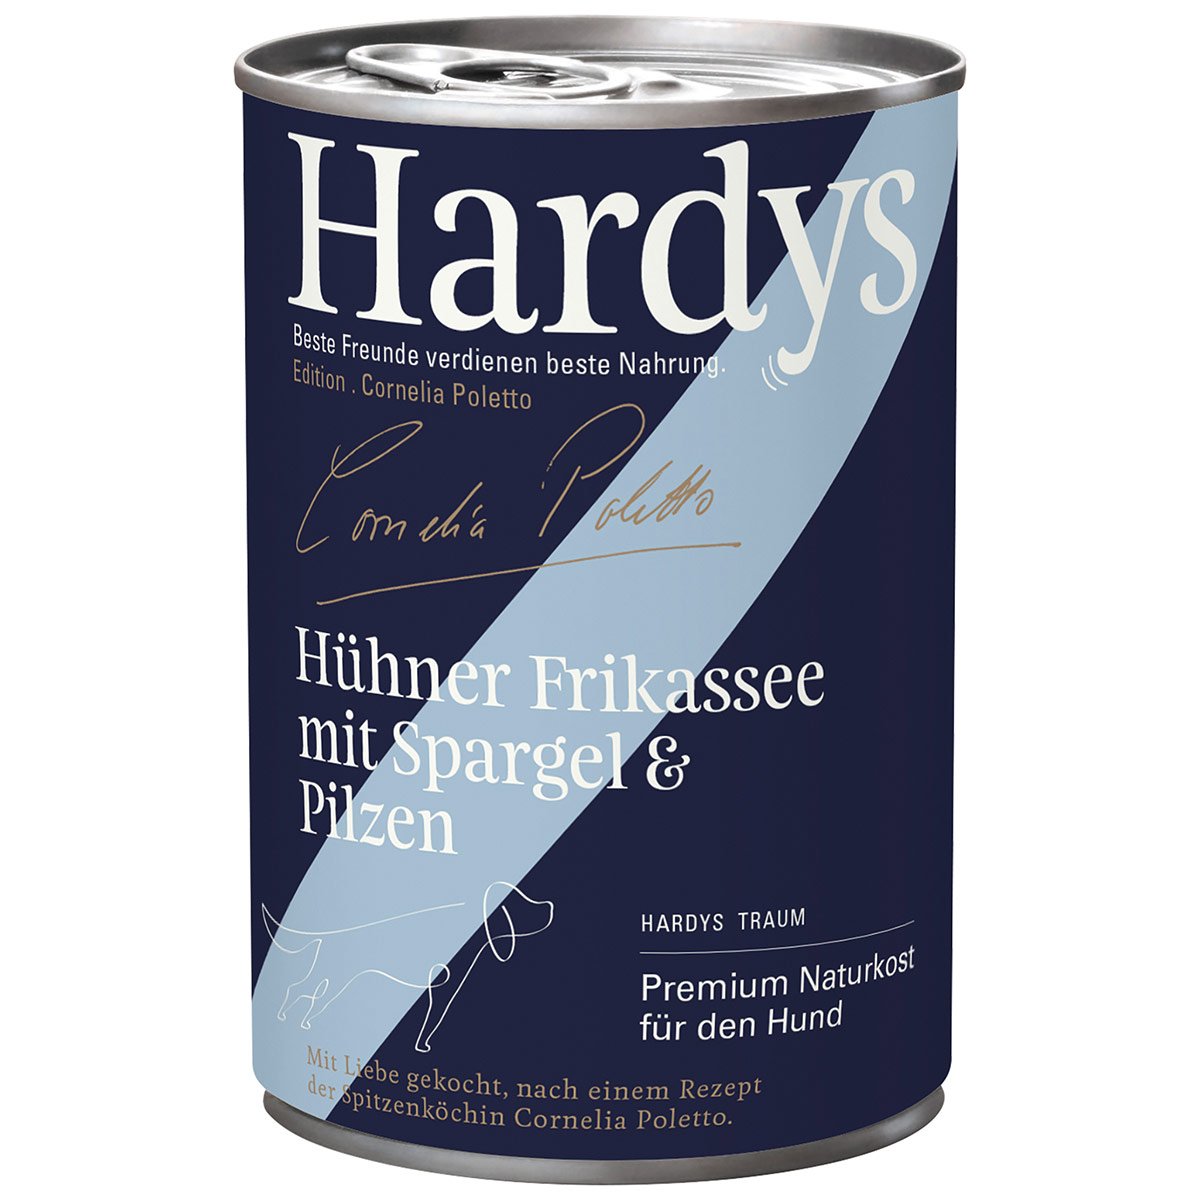 Hardys Ed. Cornelia Poletto Hühner Frikassee mit Spargel & Pilzen 6x400g von Hardys